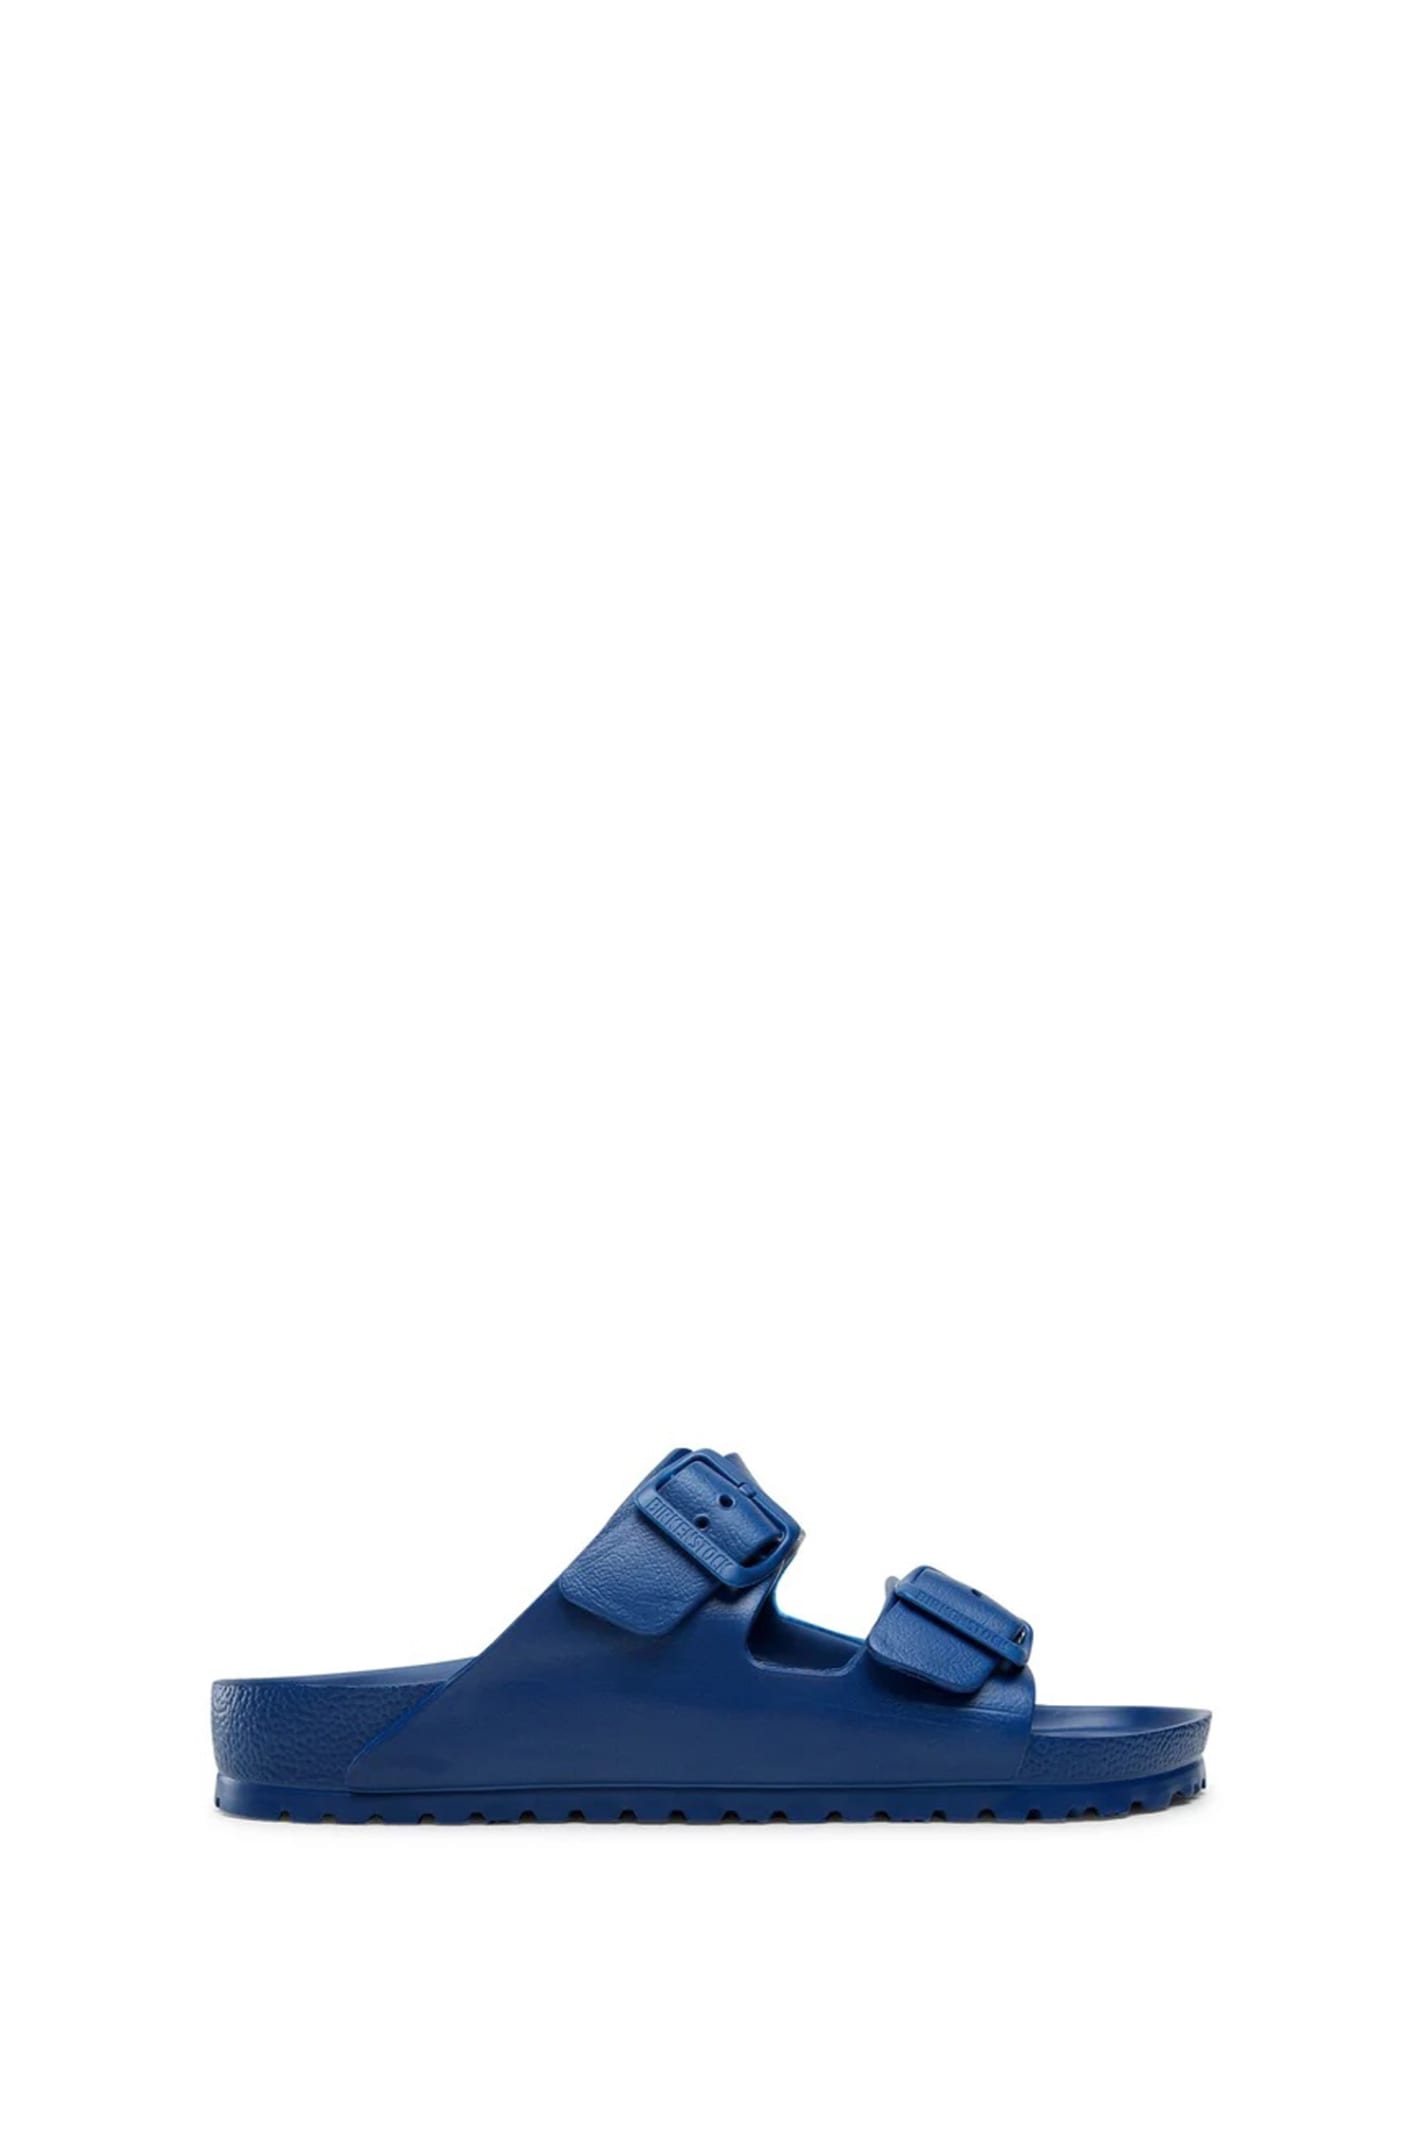 Shop Birkenstock Flat Sandal In Blue